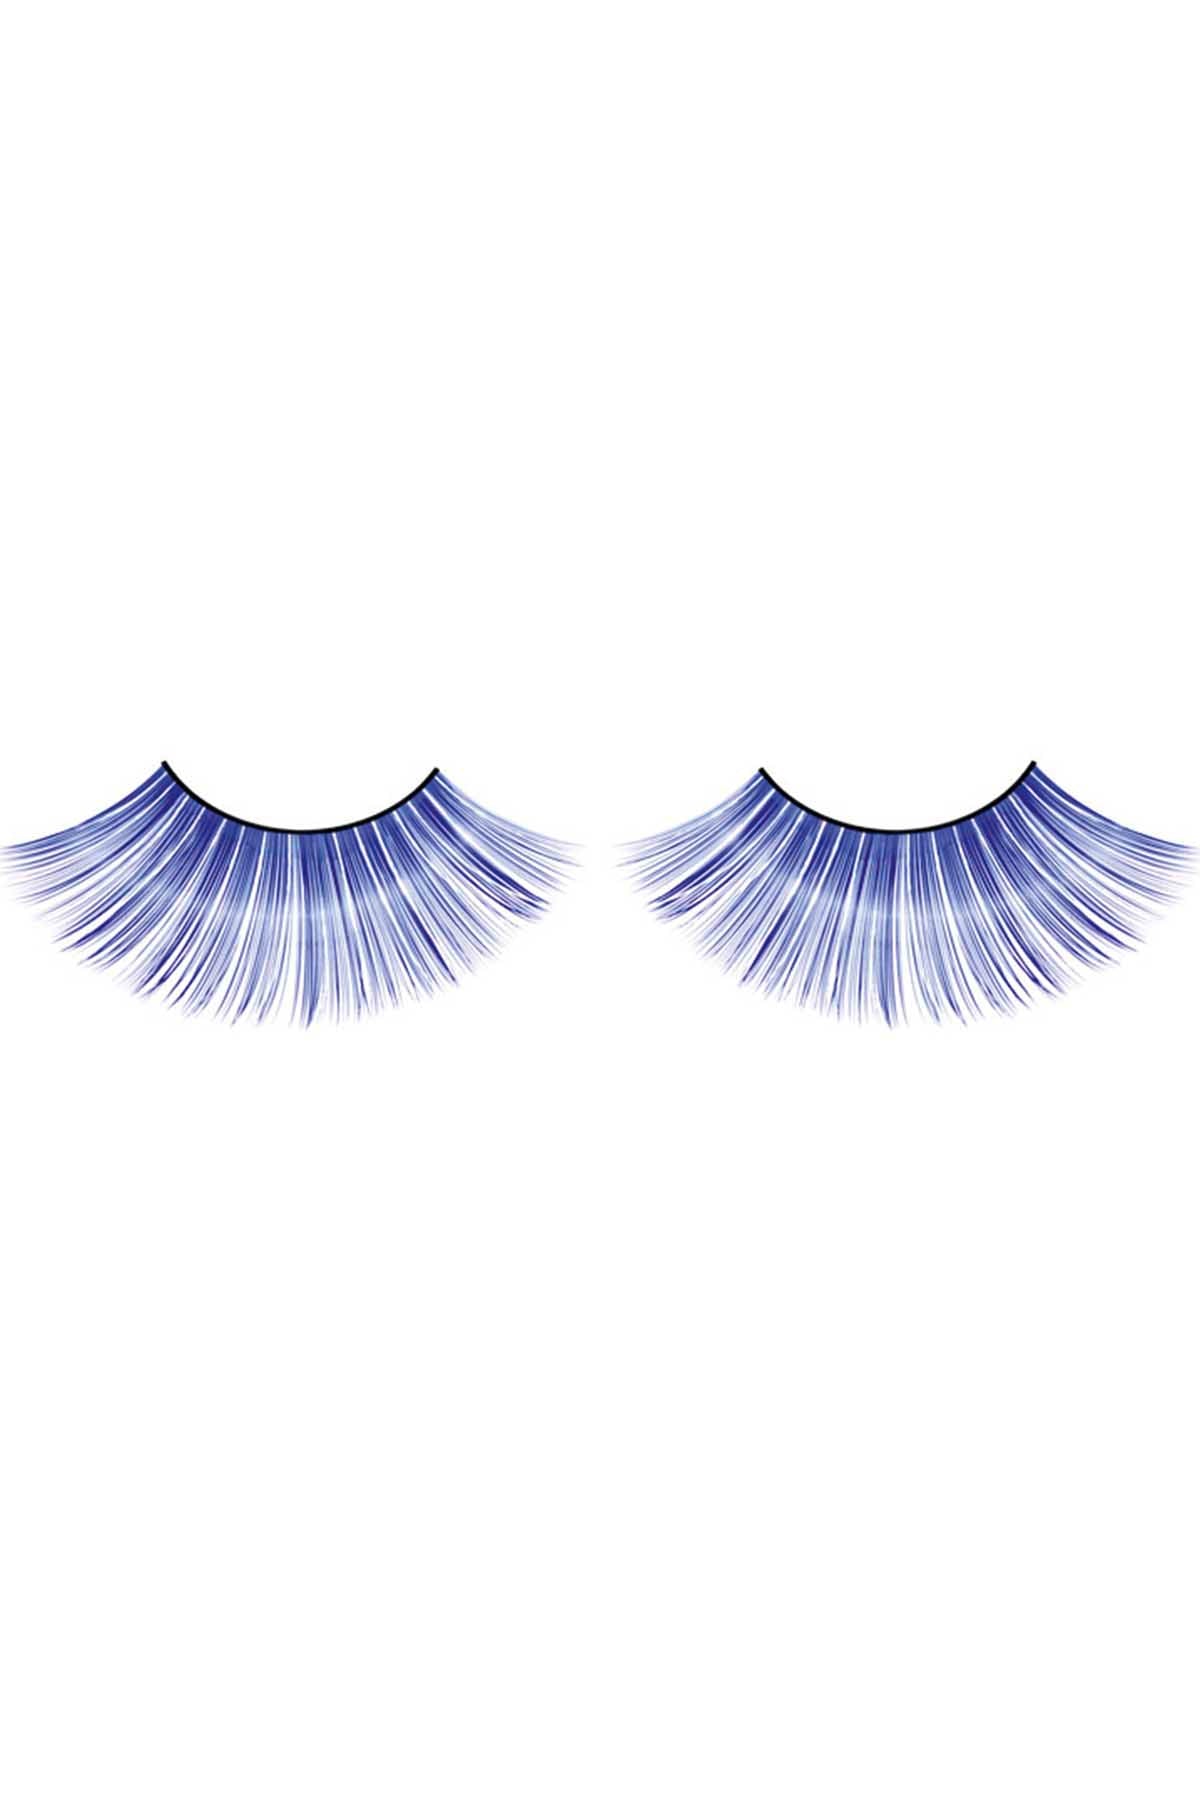 Baci Blue Glitter Magic Colors Holographic Eyelashes